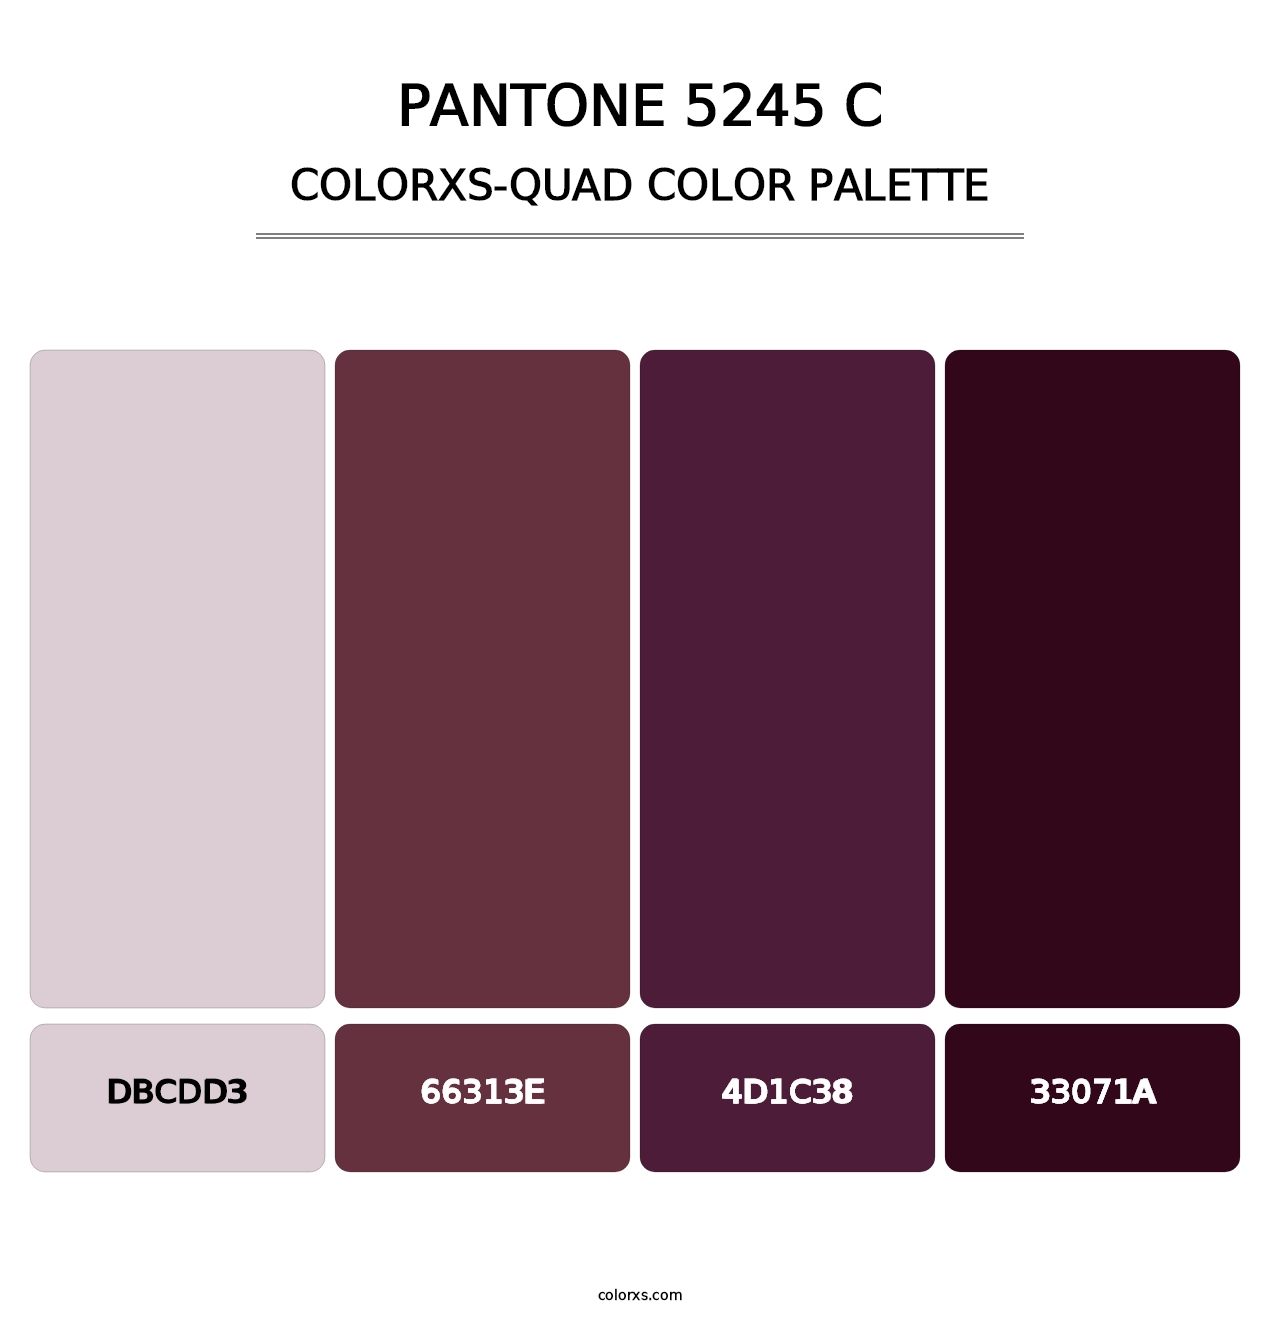 PANTONE 5245 C - Colorxs Quad Palette